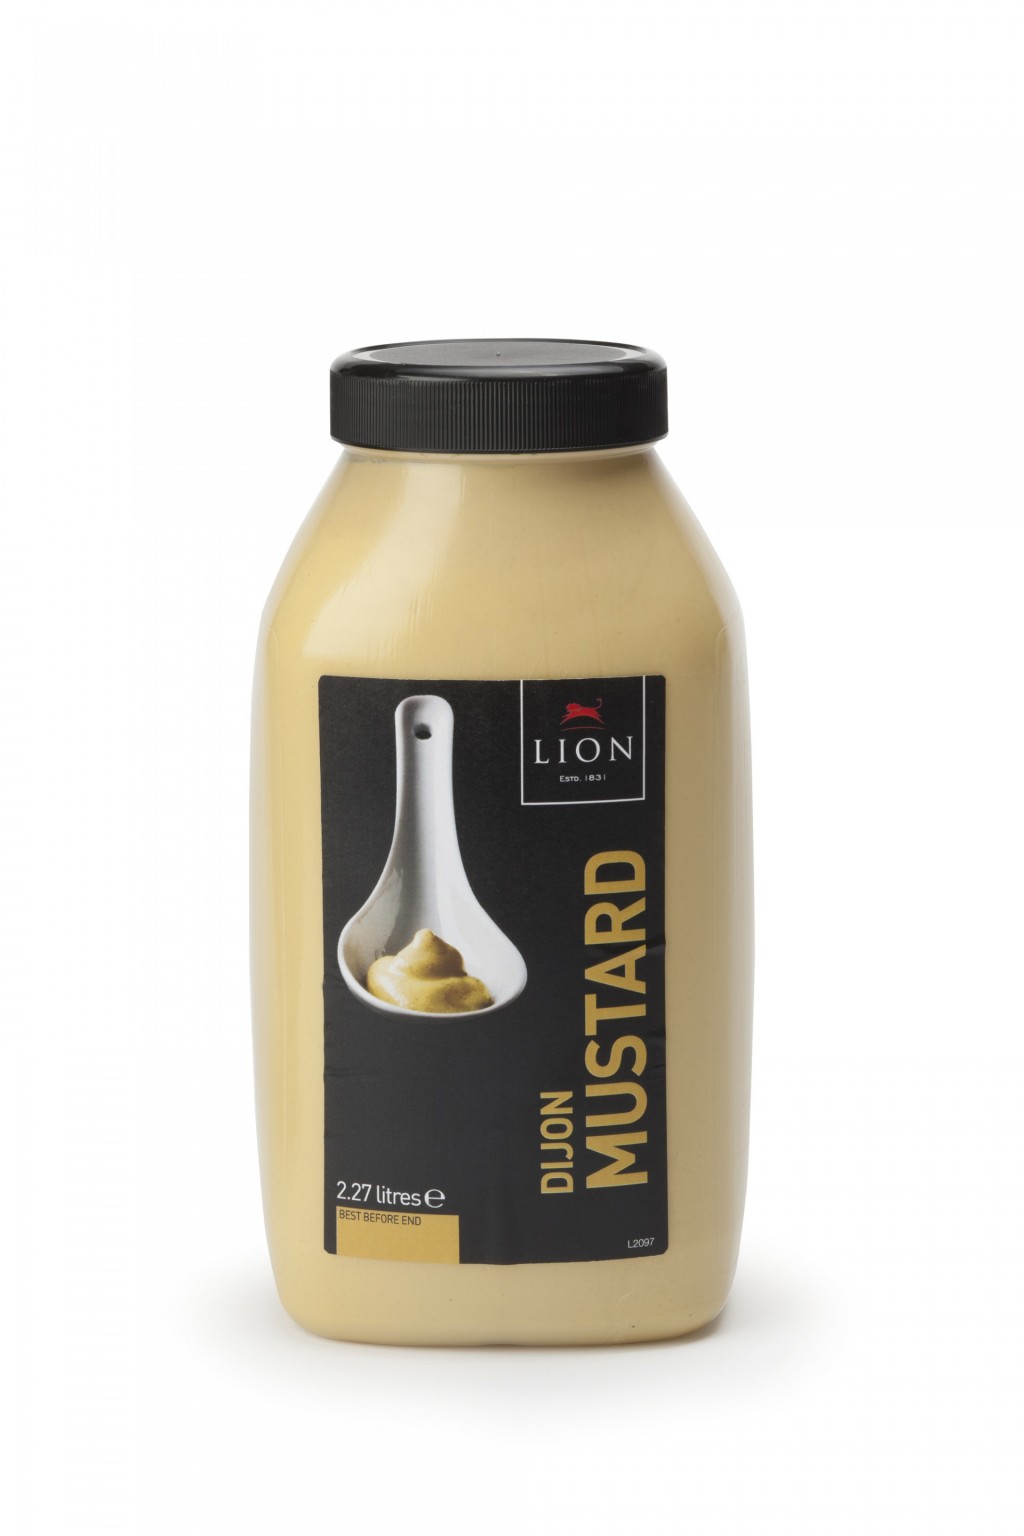 LION Dijon Mustard